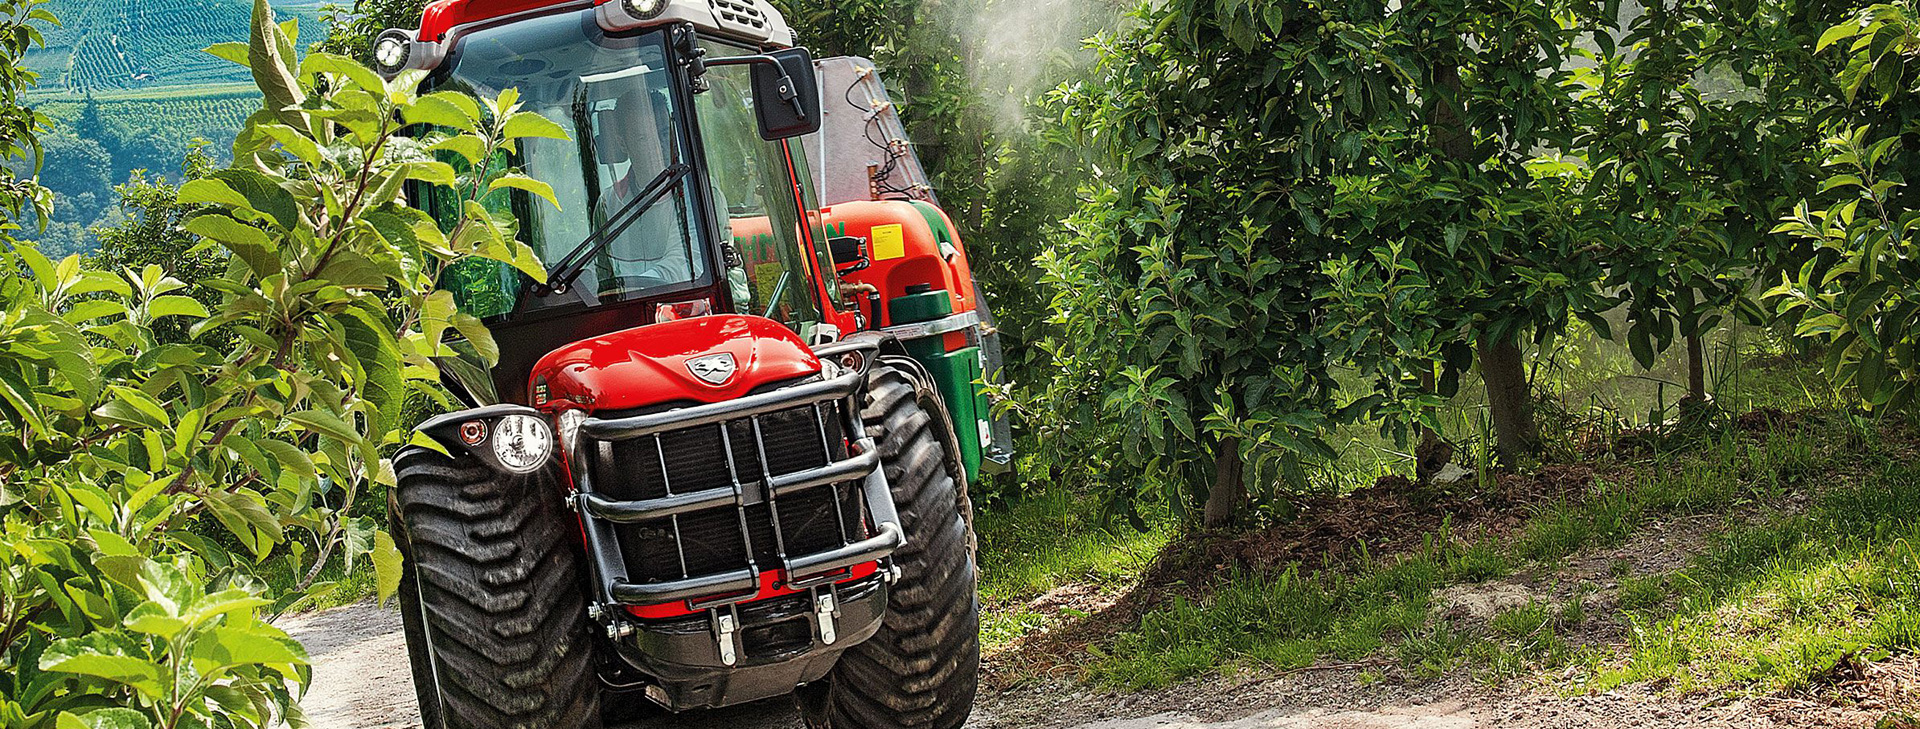 Traktoren und landwirtschaftliche Maschinen<br />
von Ihrem Partner KLG